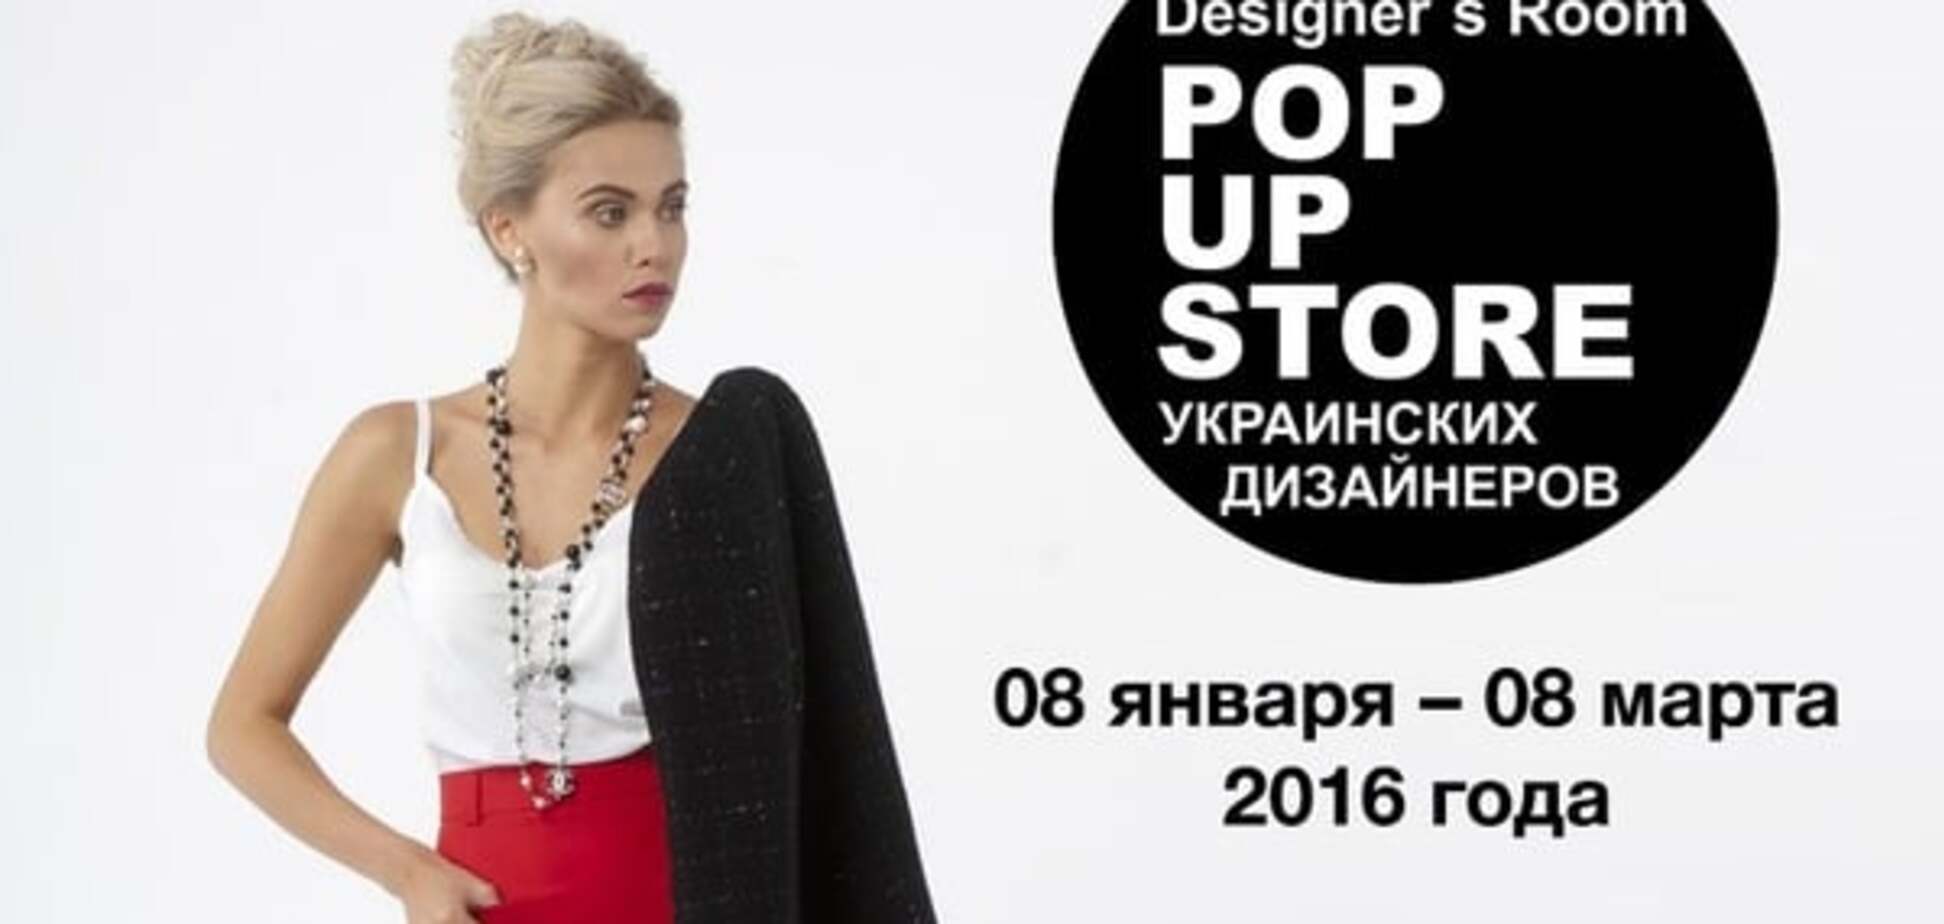 Открылся Designer’s Room POP-UP store украинских дизайнеров в ТРЦ 'КАРАВАН'